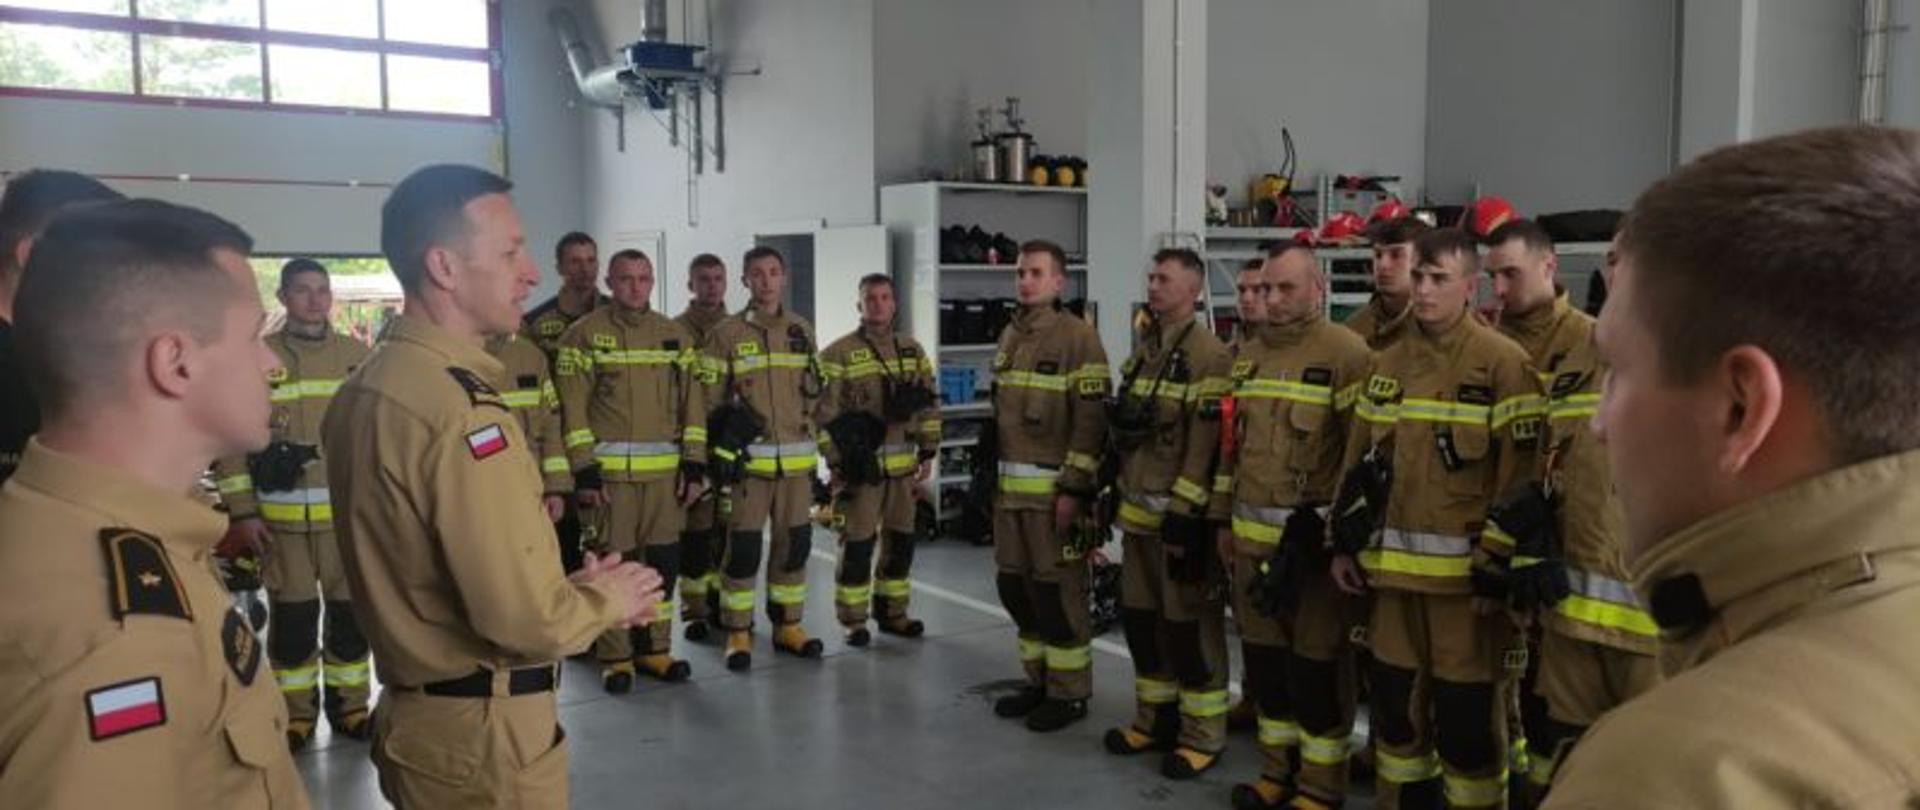 strażak przemawia do grupy strażaków stojących w garażu w mundurach specjalnych